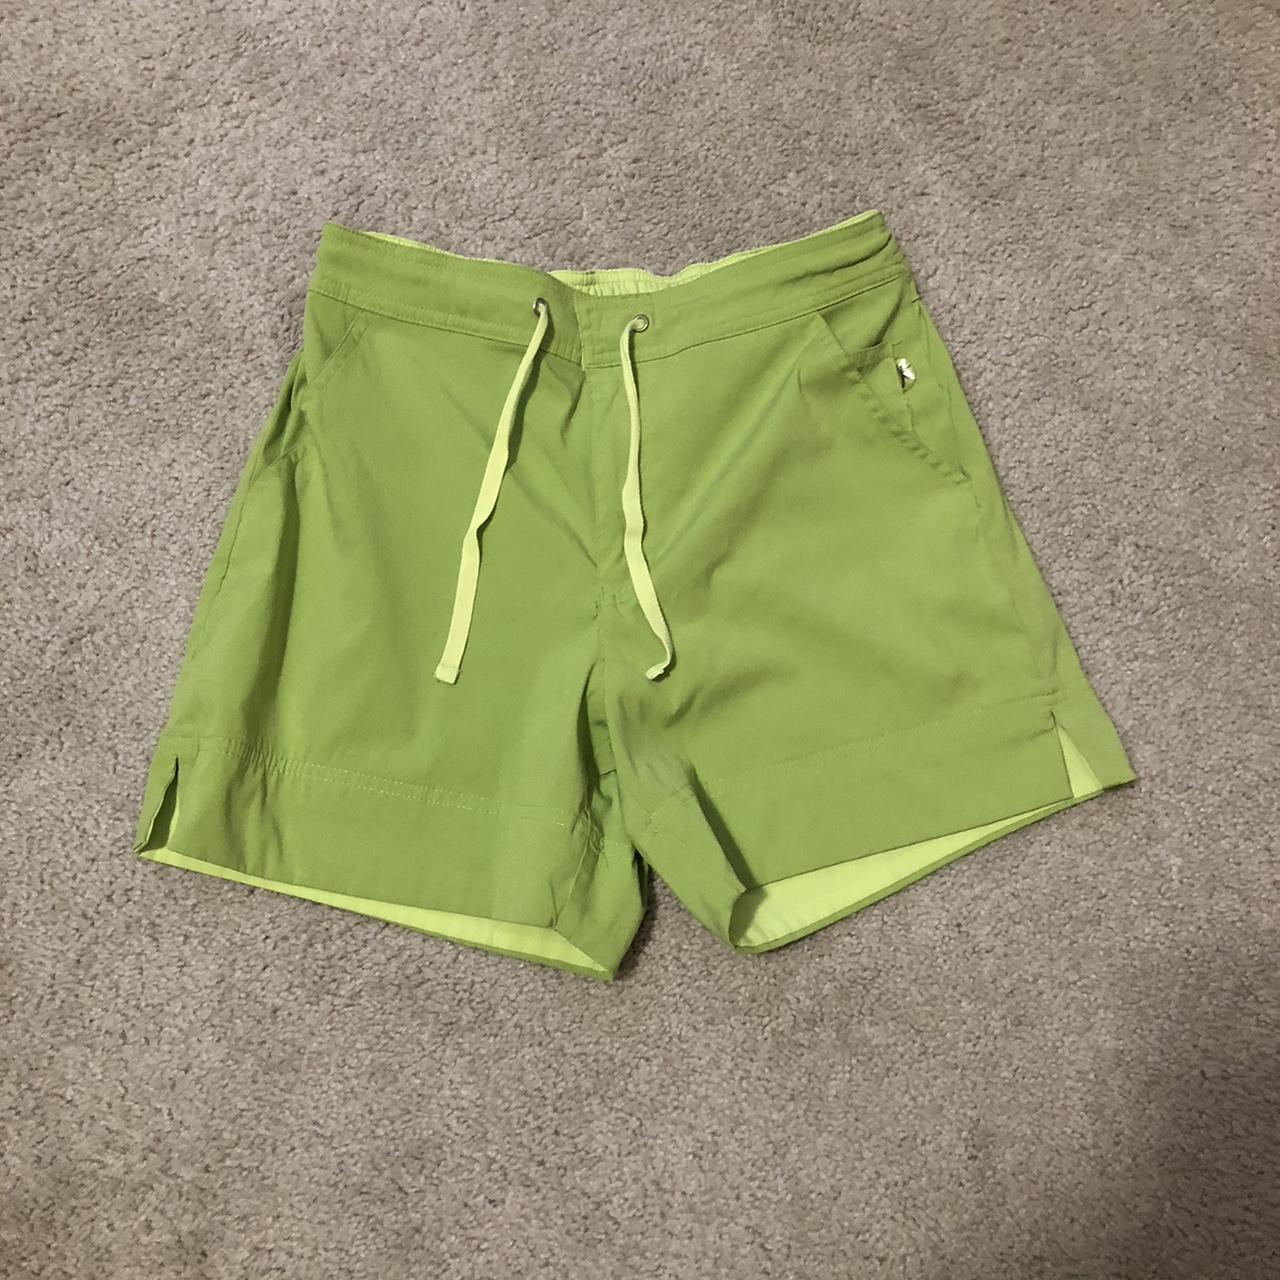 Vintage green Danskin Now shorts... - Depop